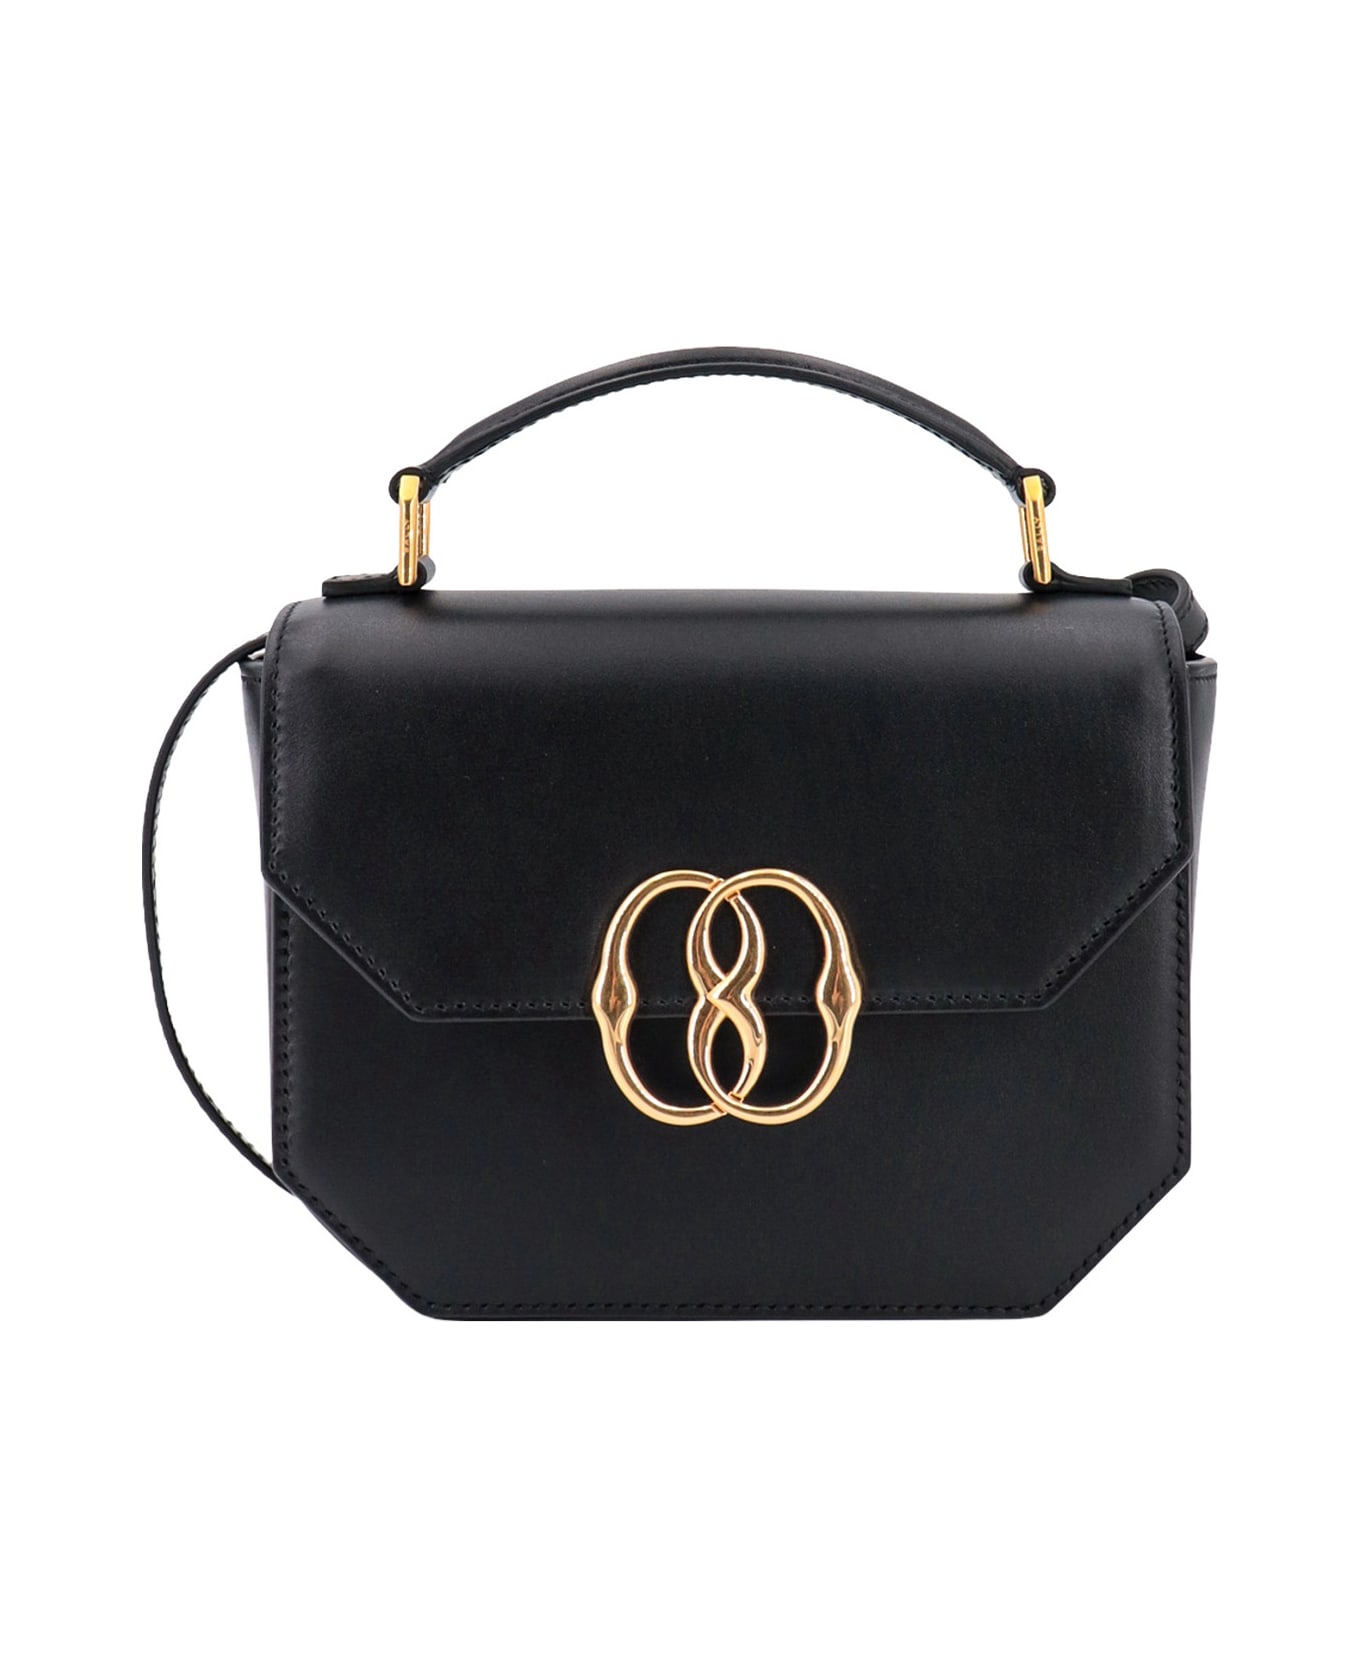 Bally Handbag - Black